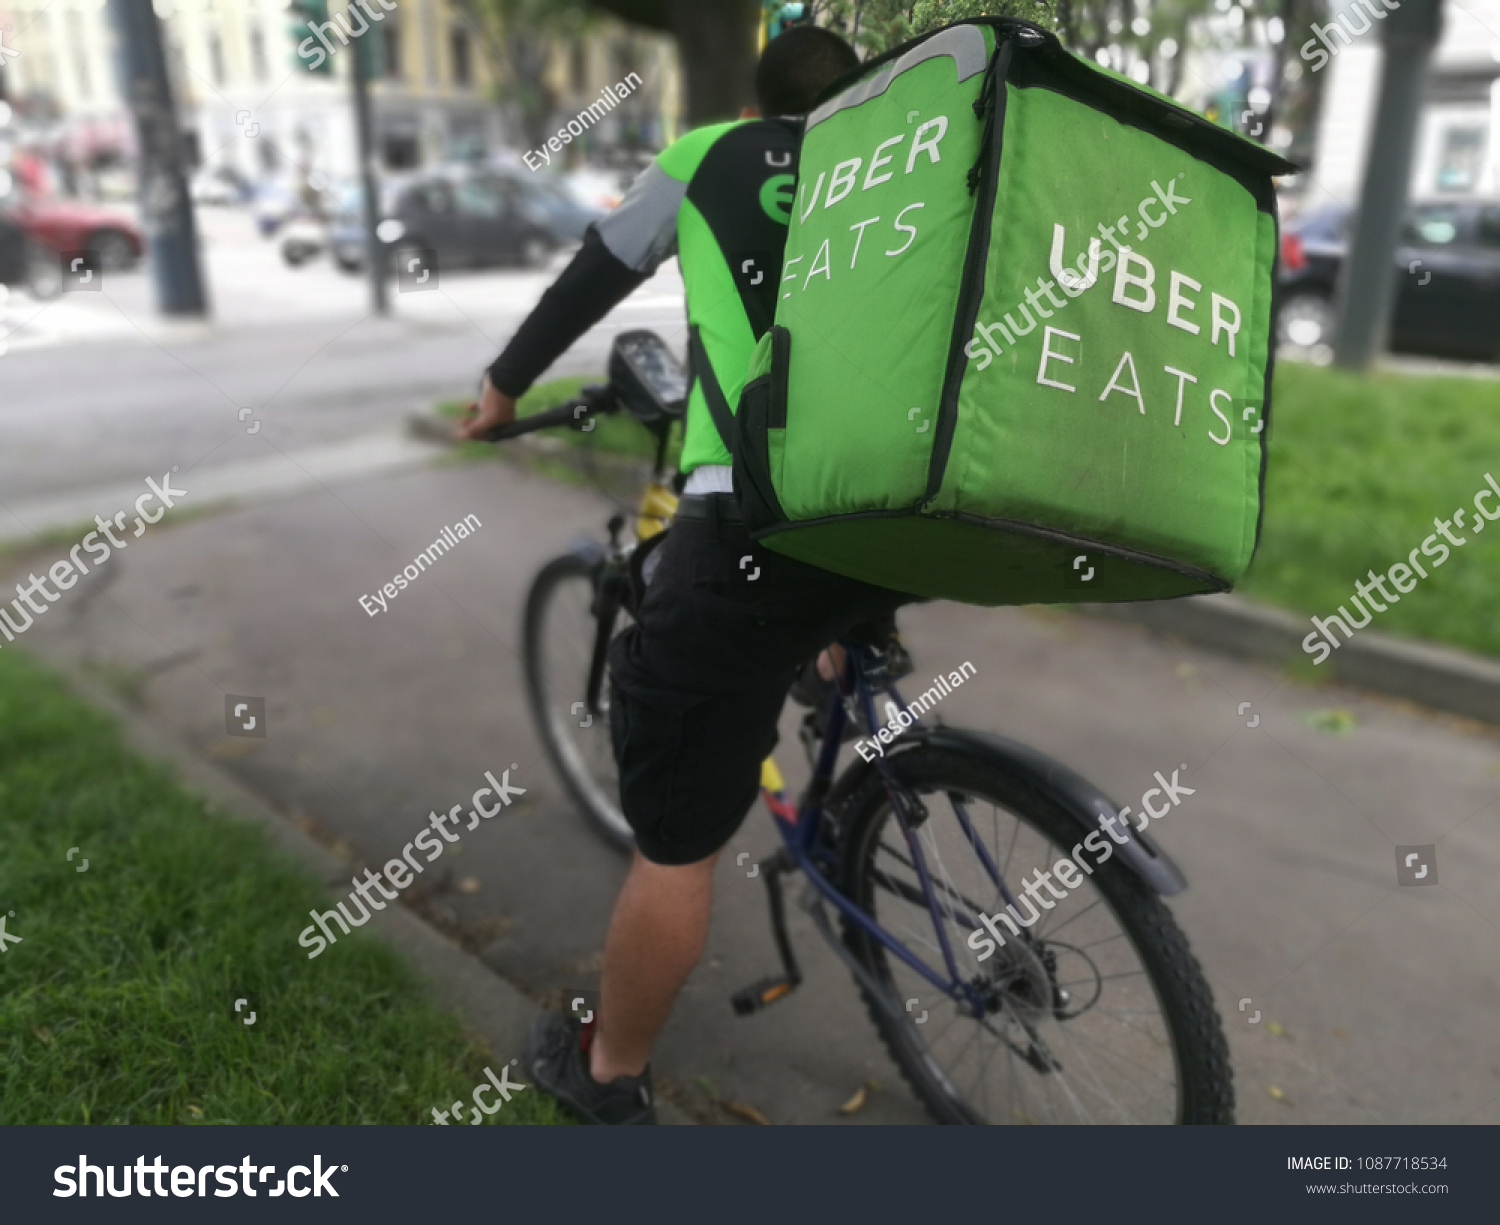 uber eats bicycle